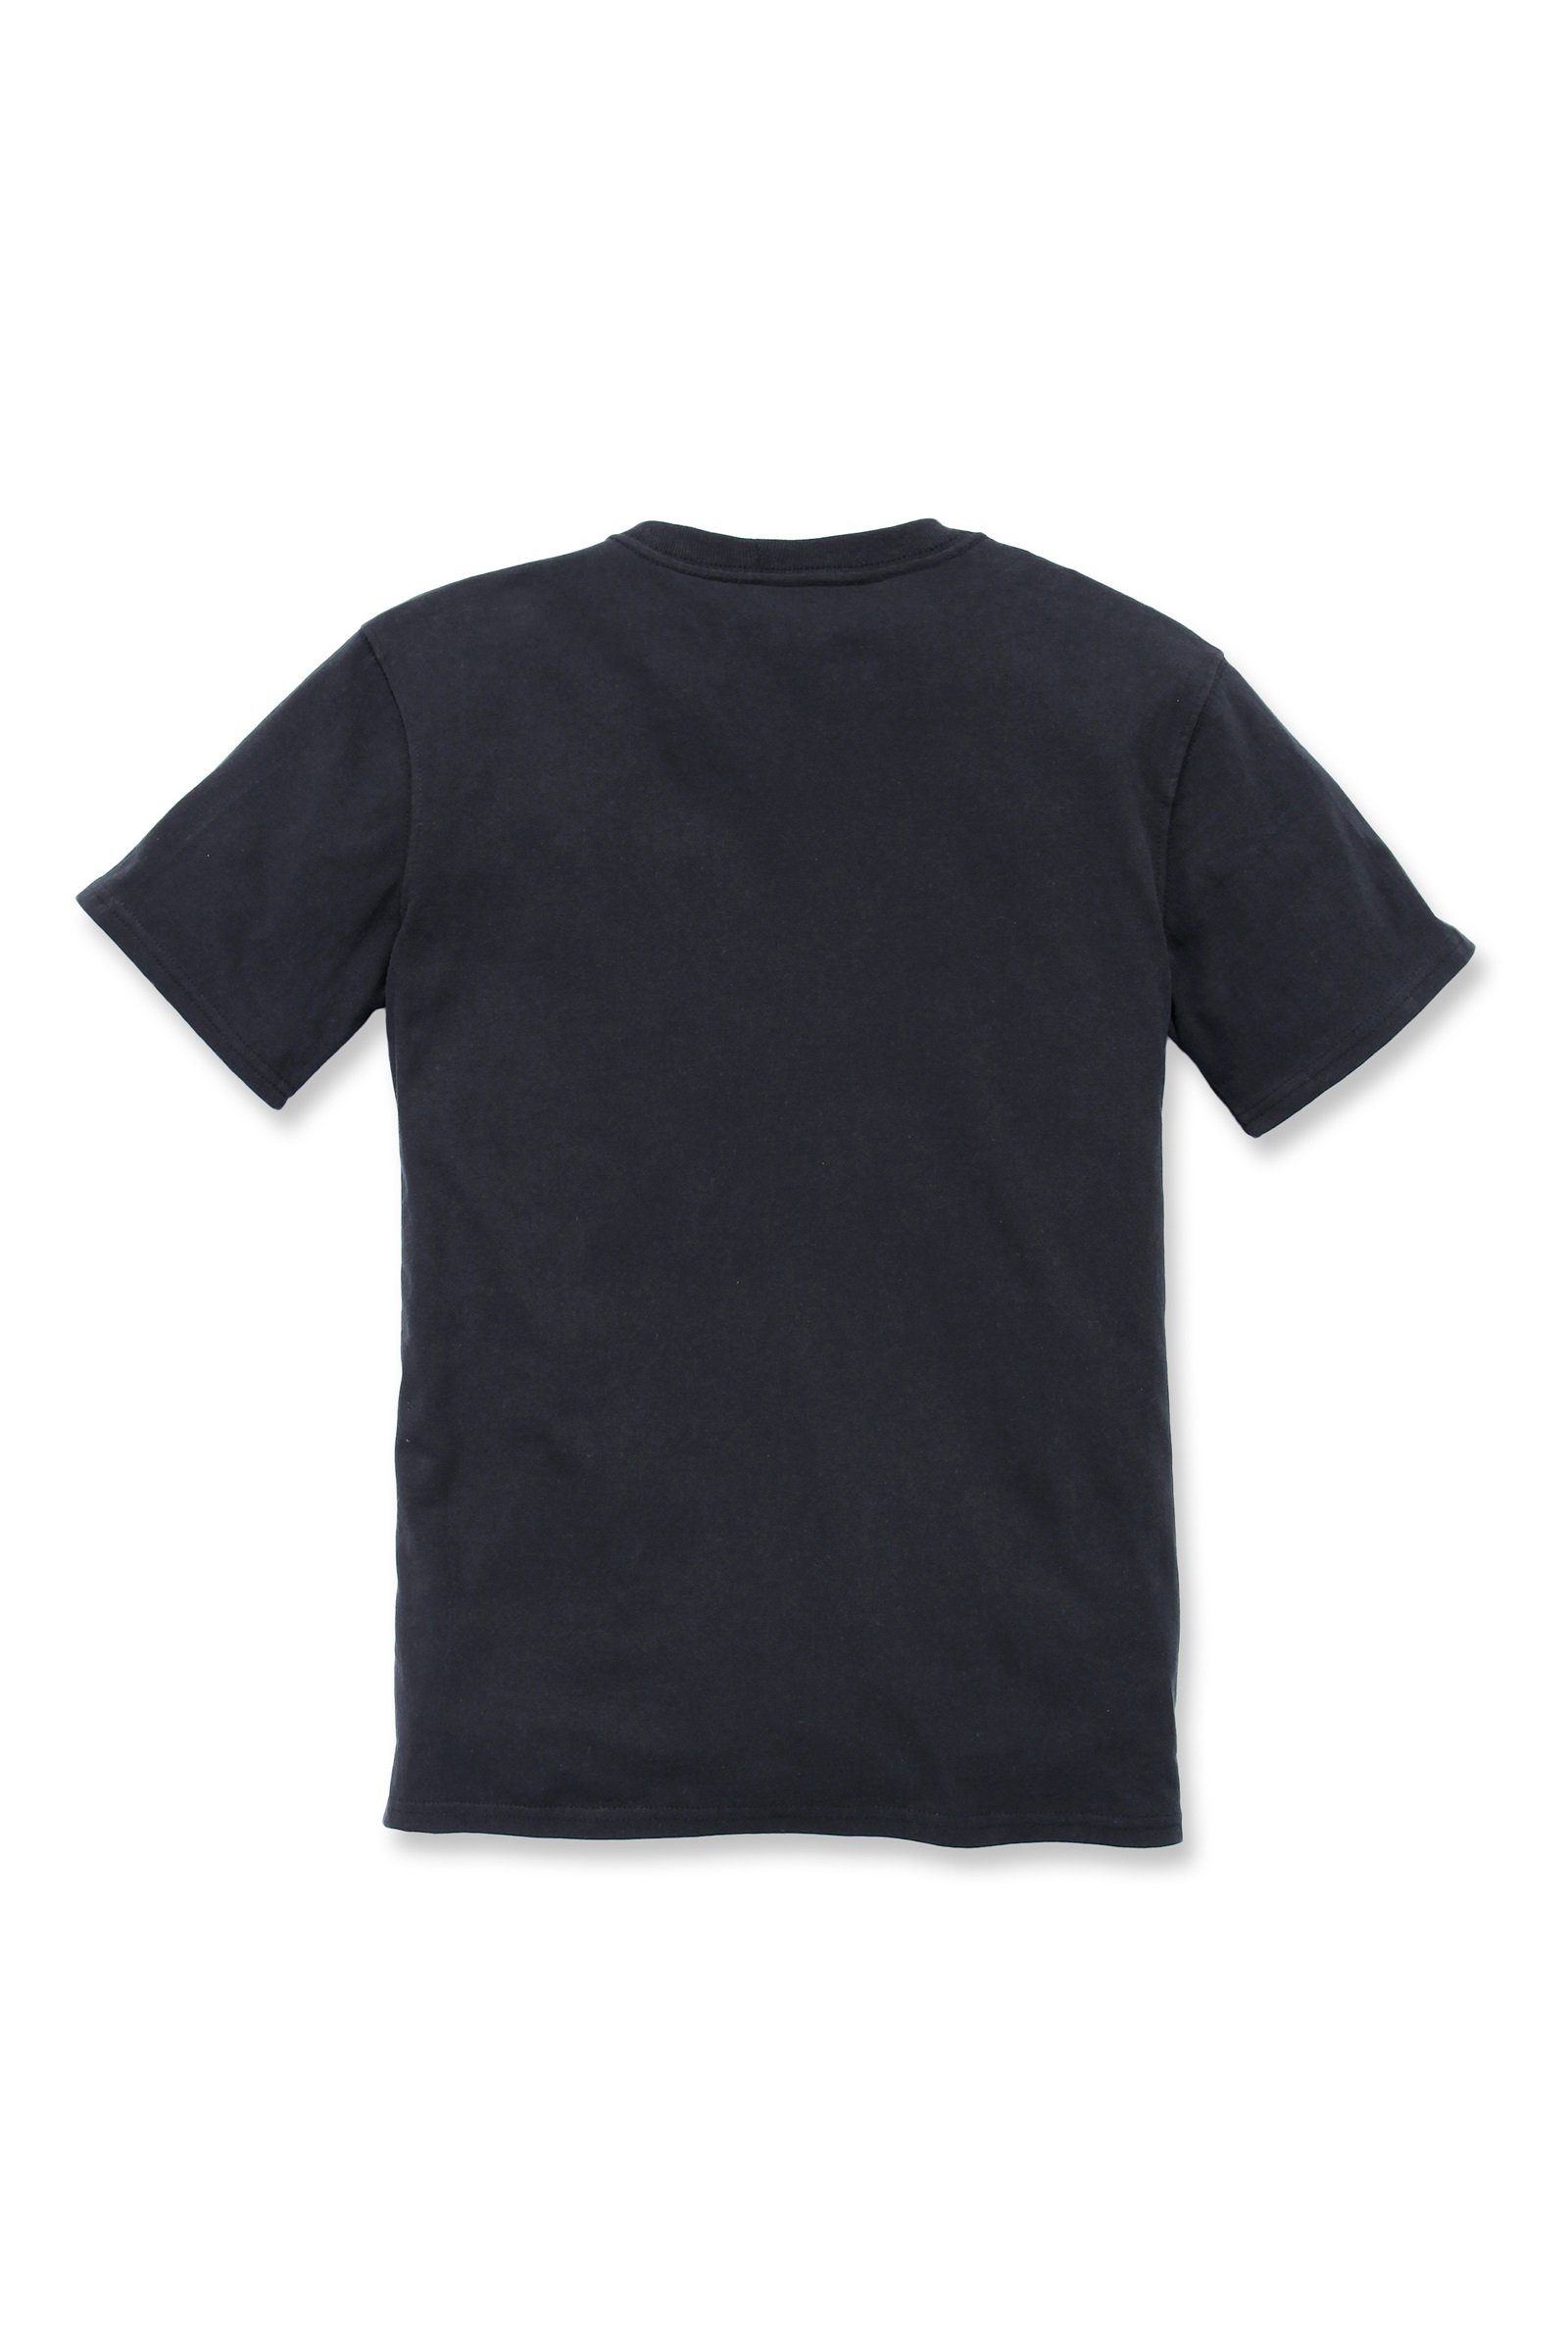 Carhartt T-Shirt Carhartt Damen Pocket Fit black Adult T-Shirt Short-Sleeve Loose Heavyweight